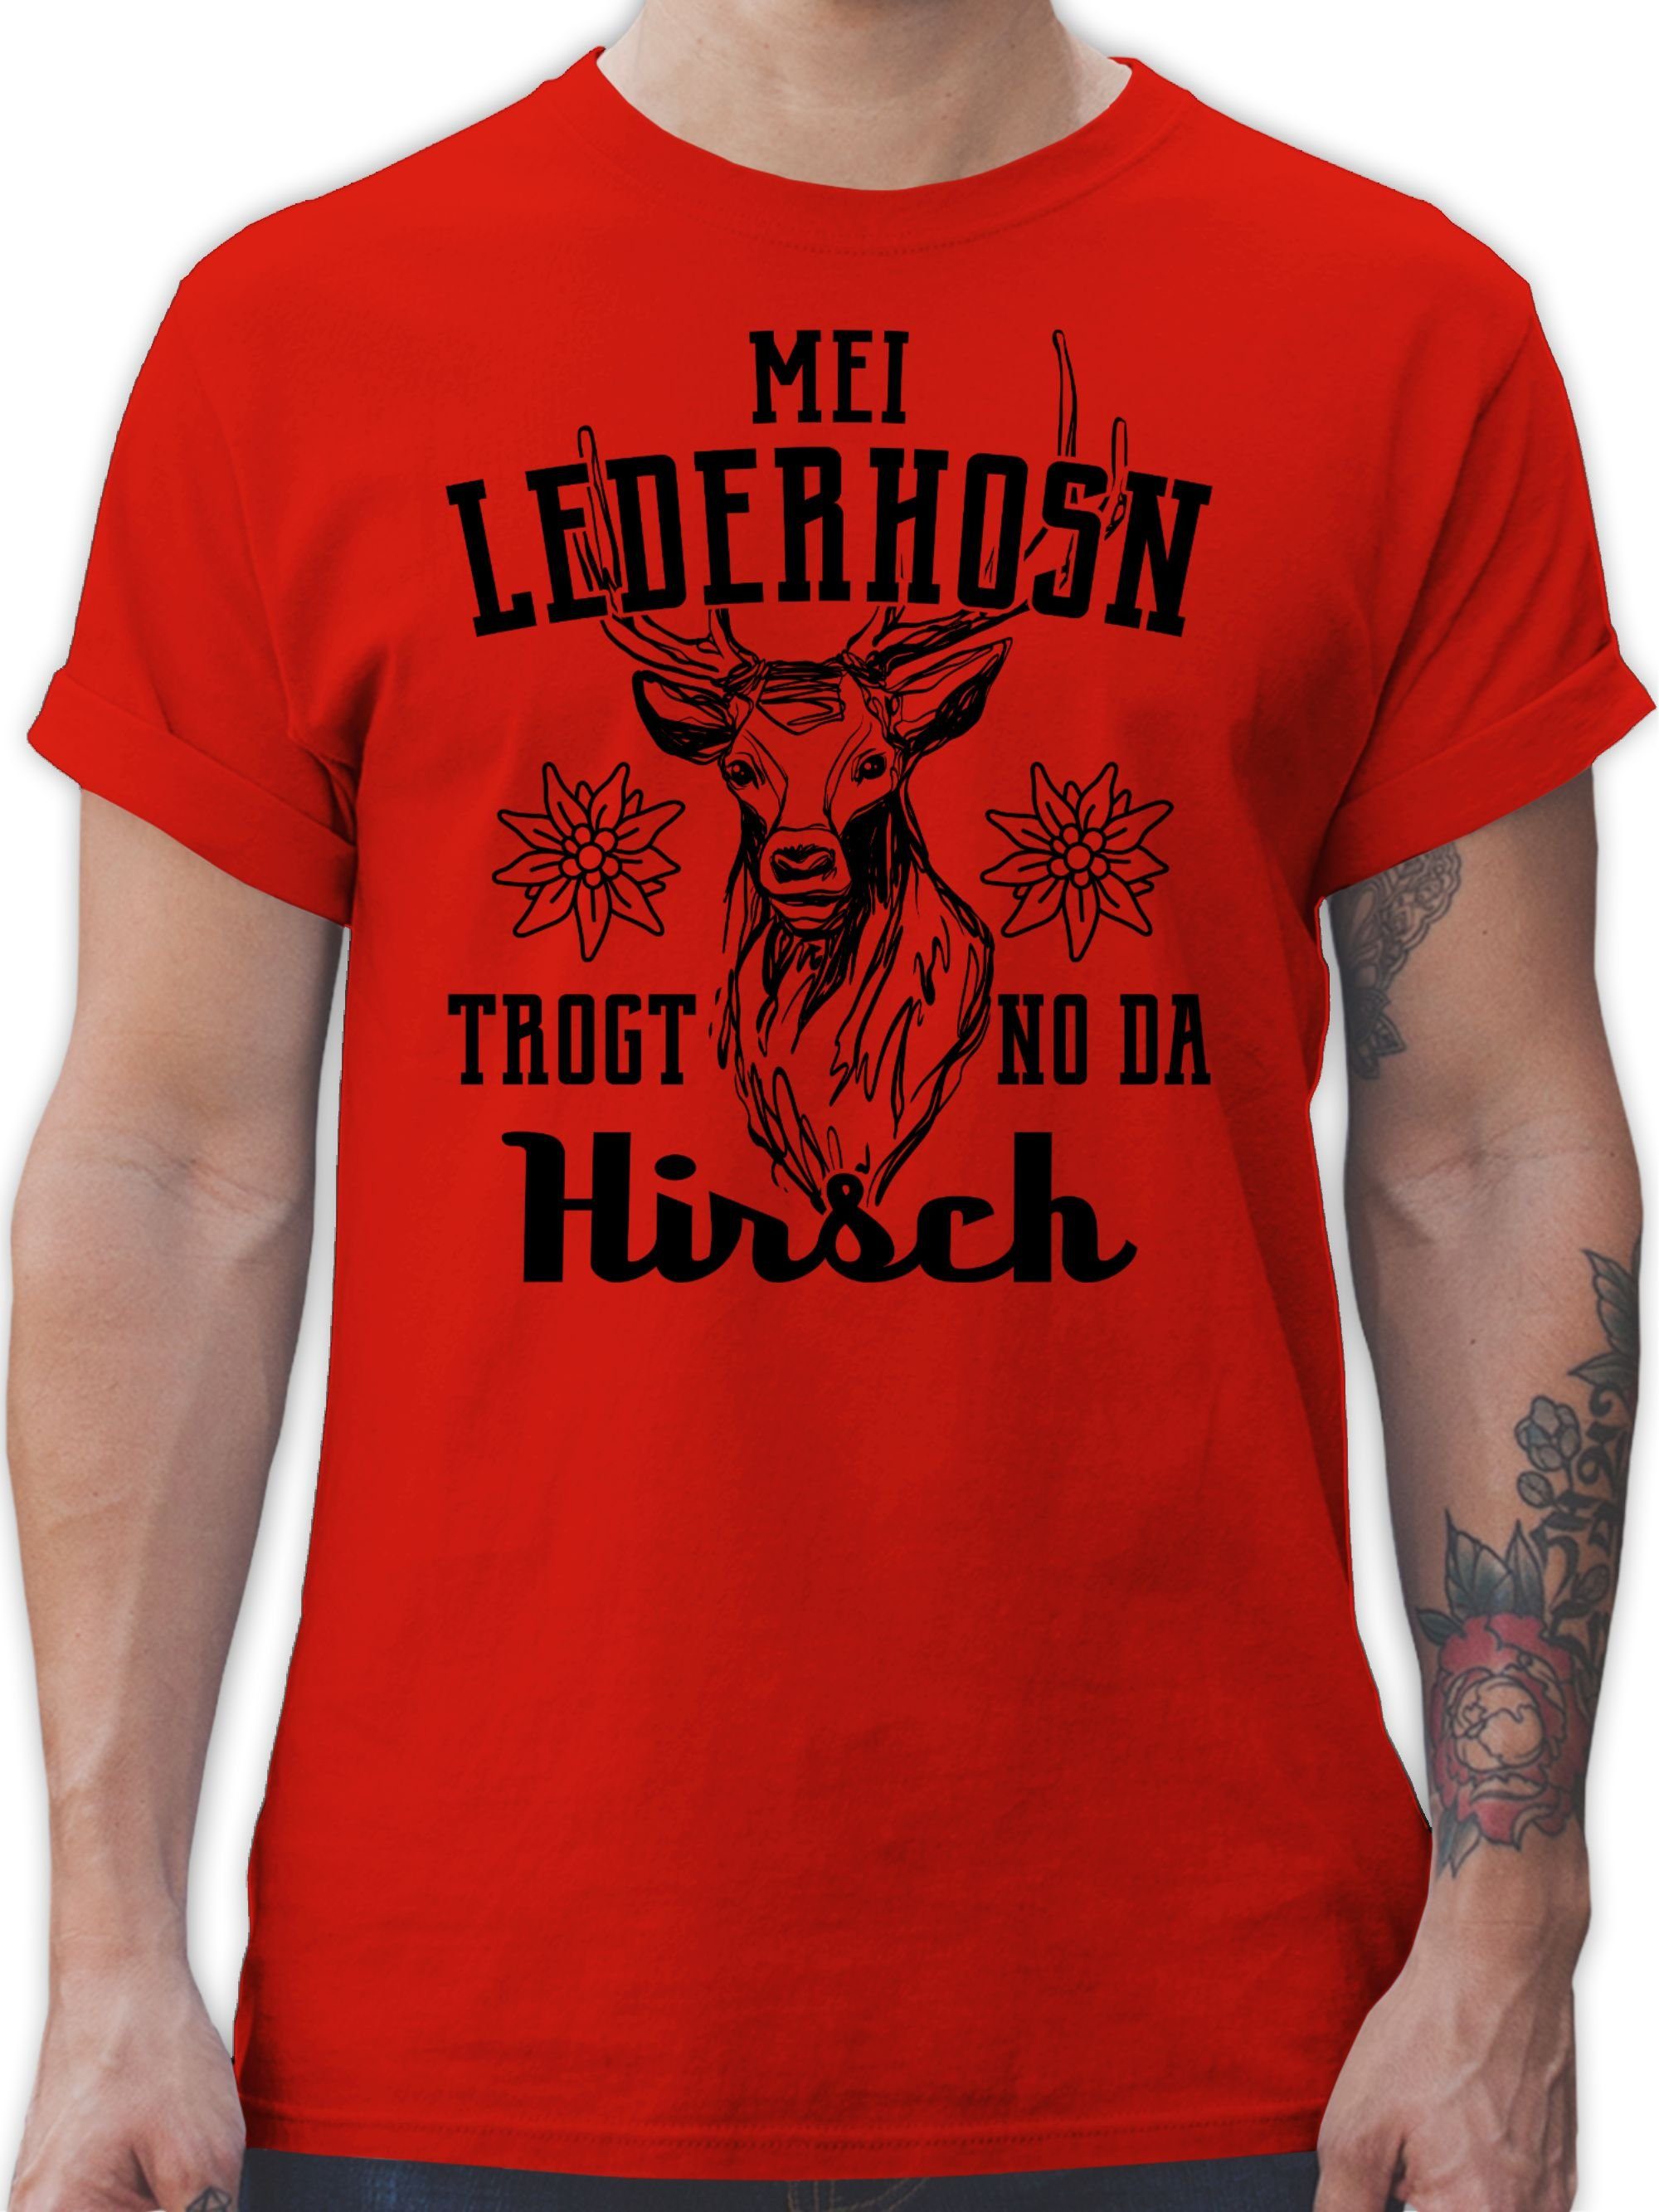 Shirtracer T-Shirt Mei Lederhosn trogt no da Hirsch - schwarz Mode für Oktoberfest Herren 3 Rot